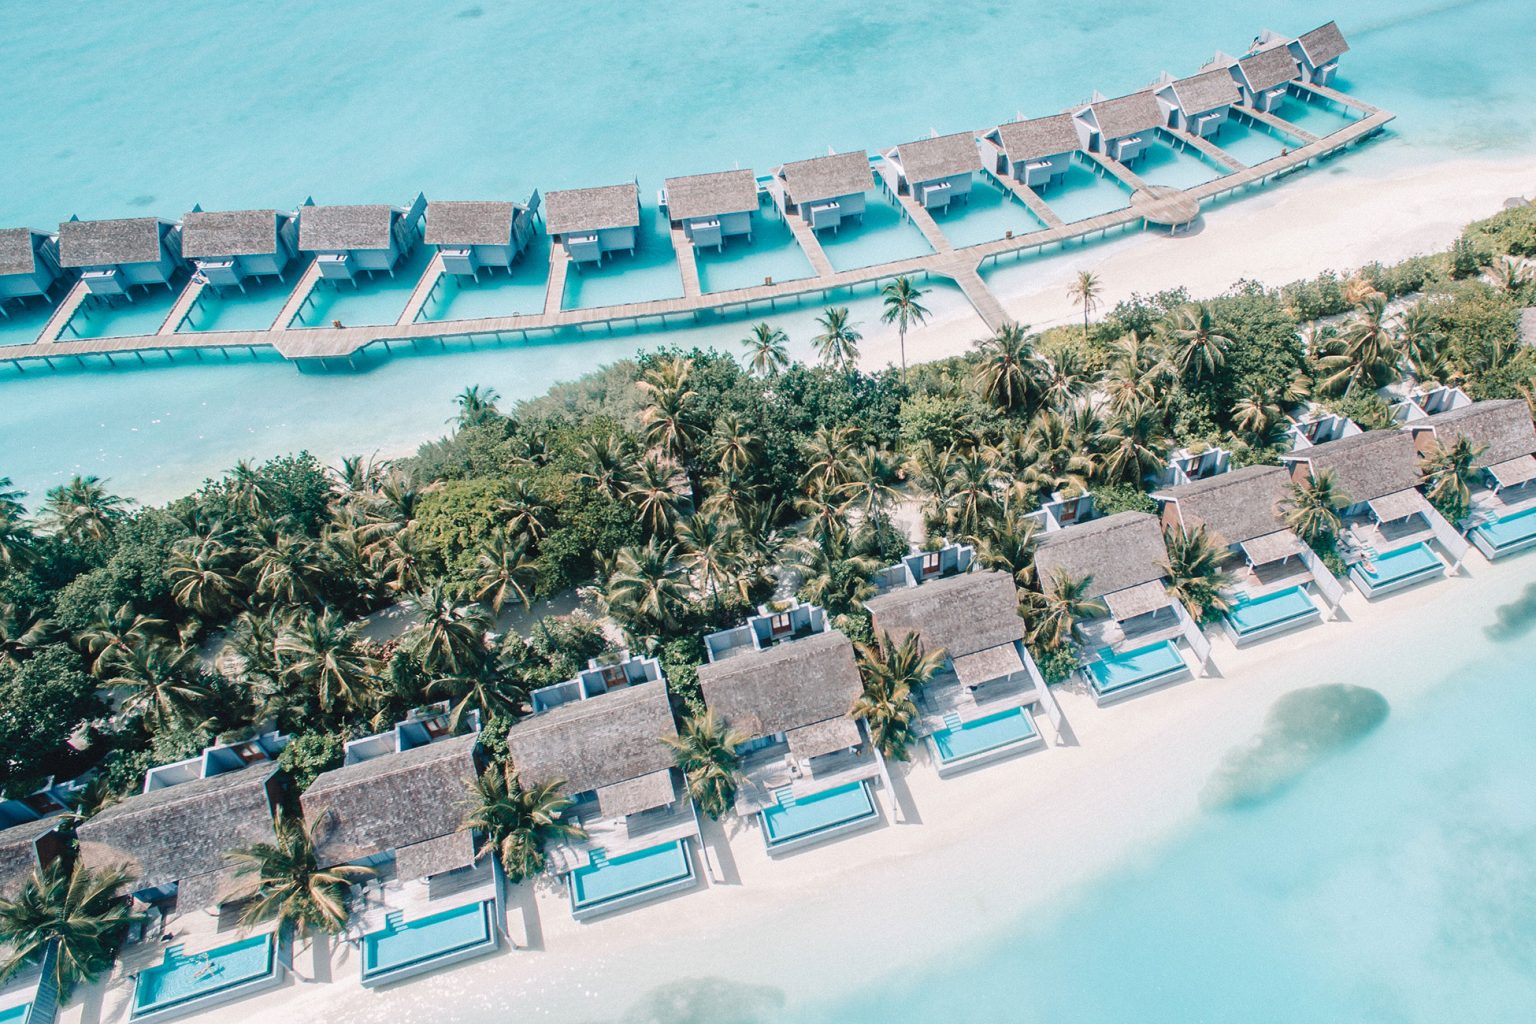 Kuramathi Island Maldives Part I Hotel Review This Island Life®